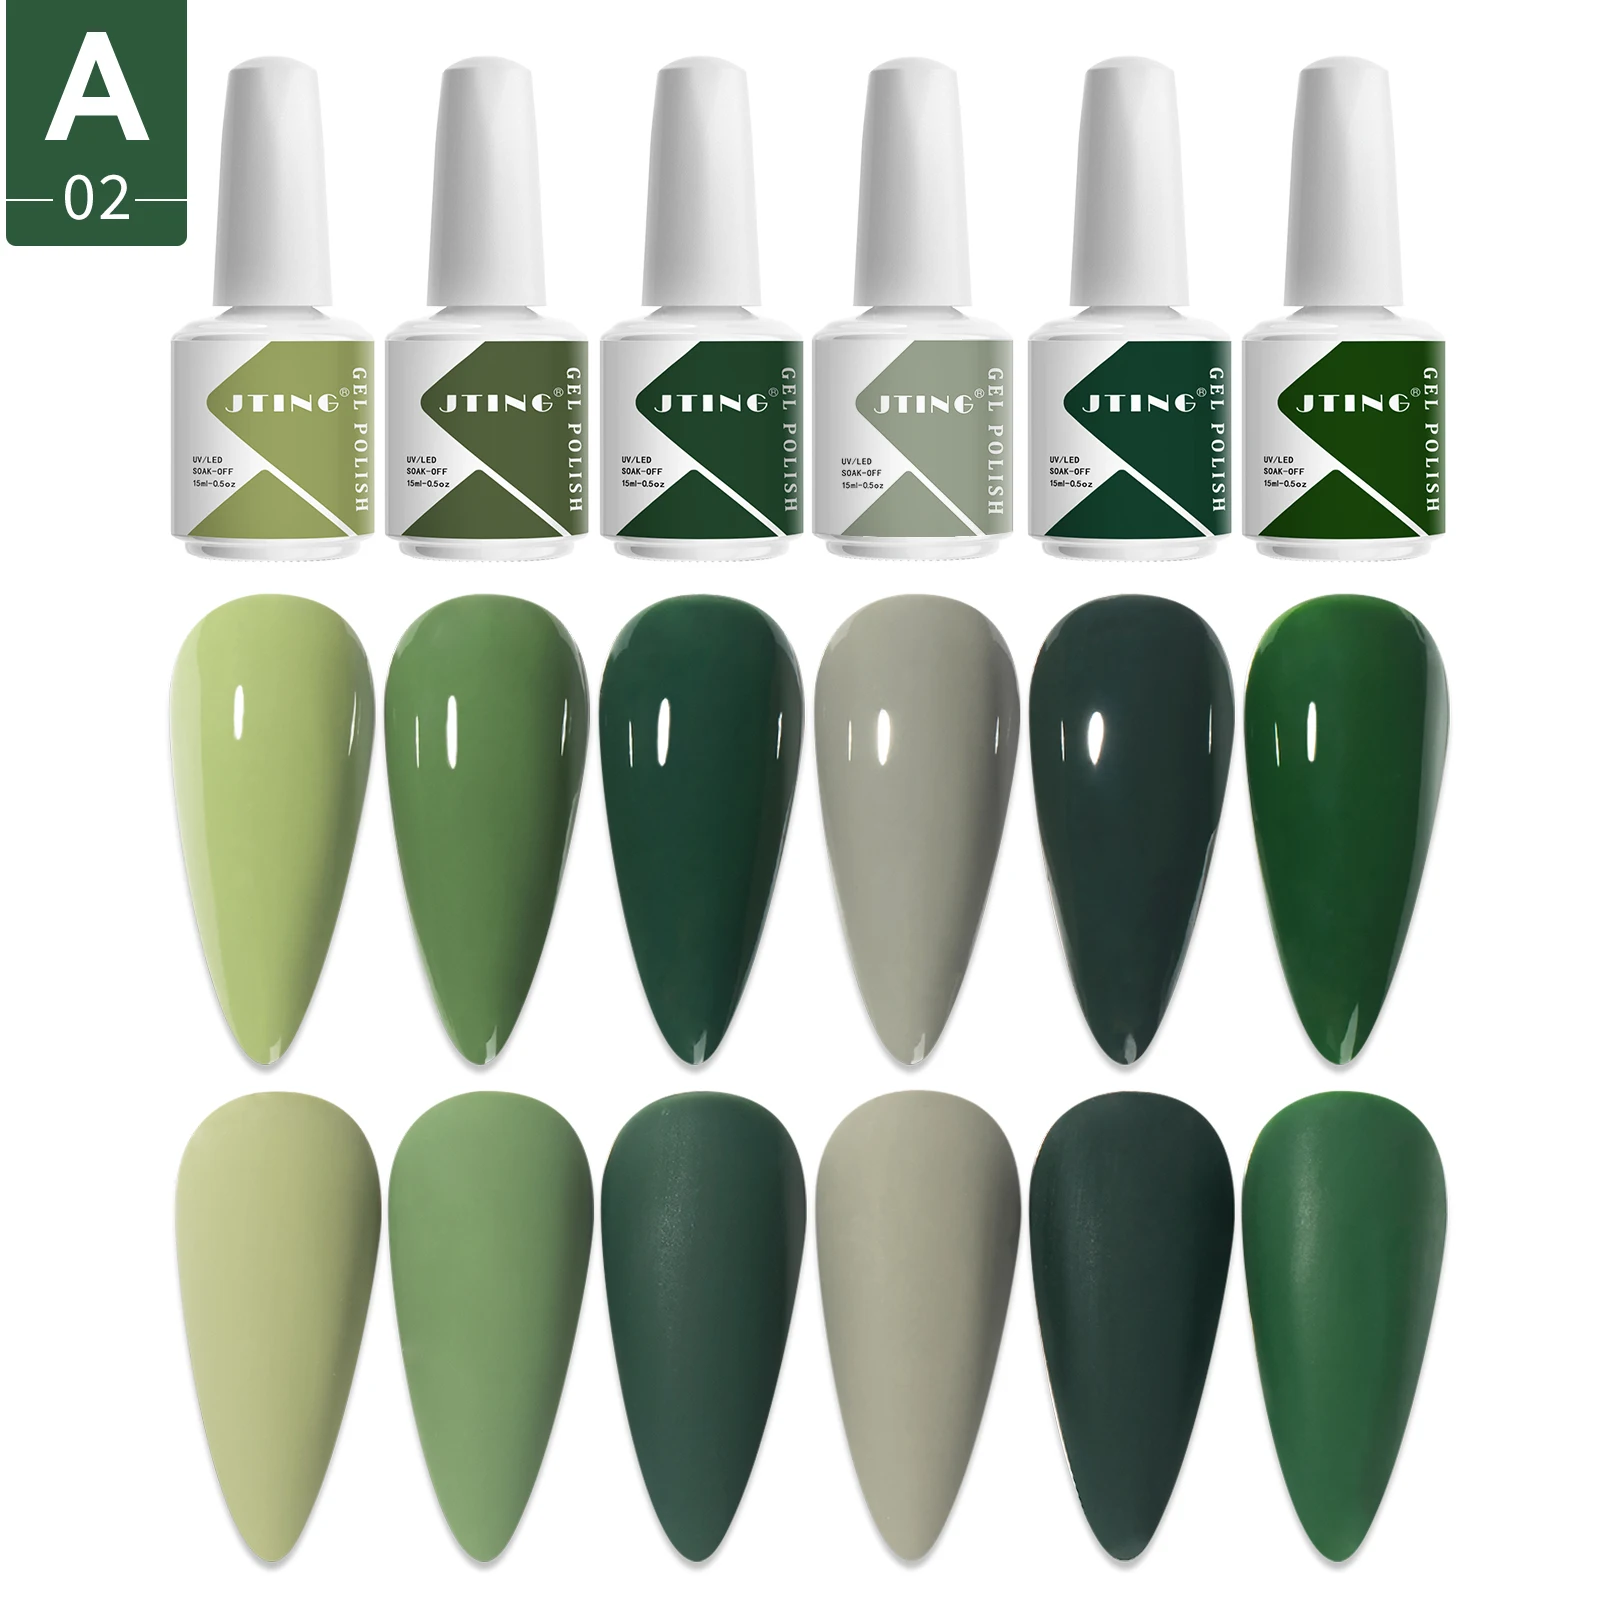 

JTING gel polish oem manufacture custom 6 Colors uv gel nail polish set 15ml bottles private label custom logo gel uv polish